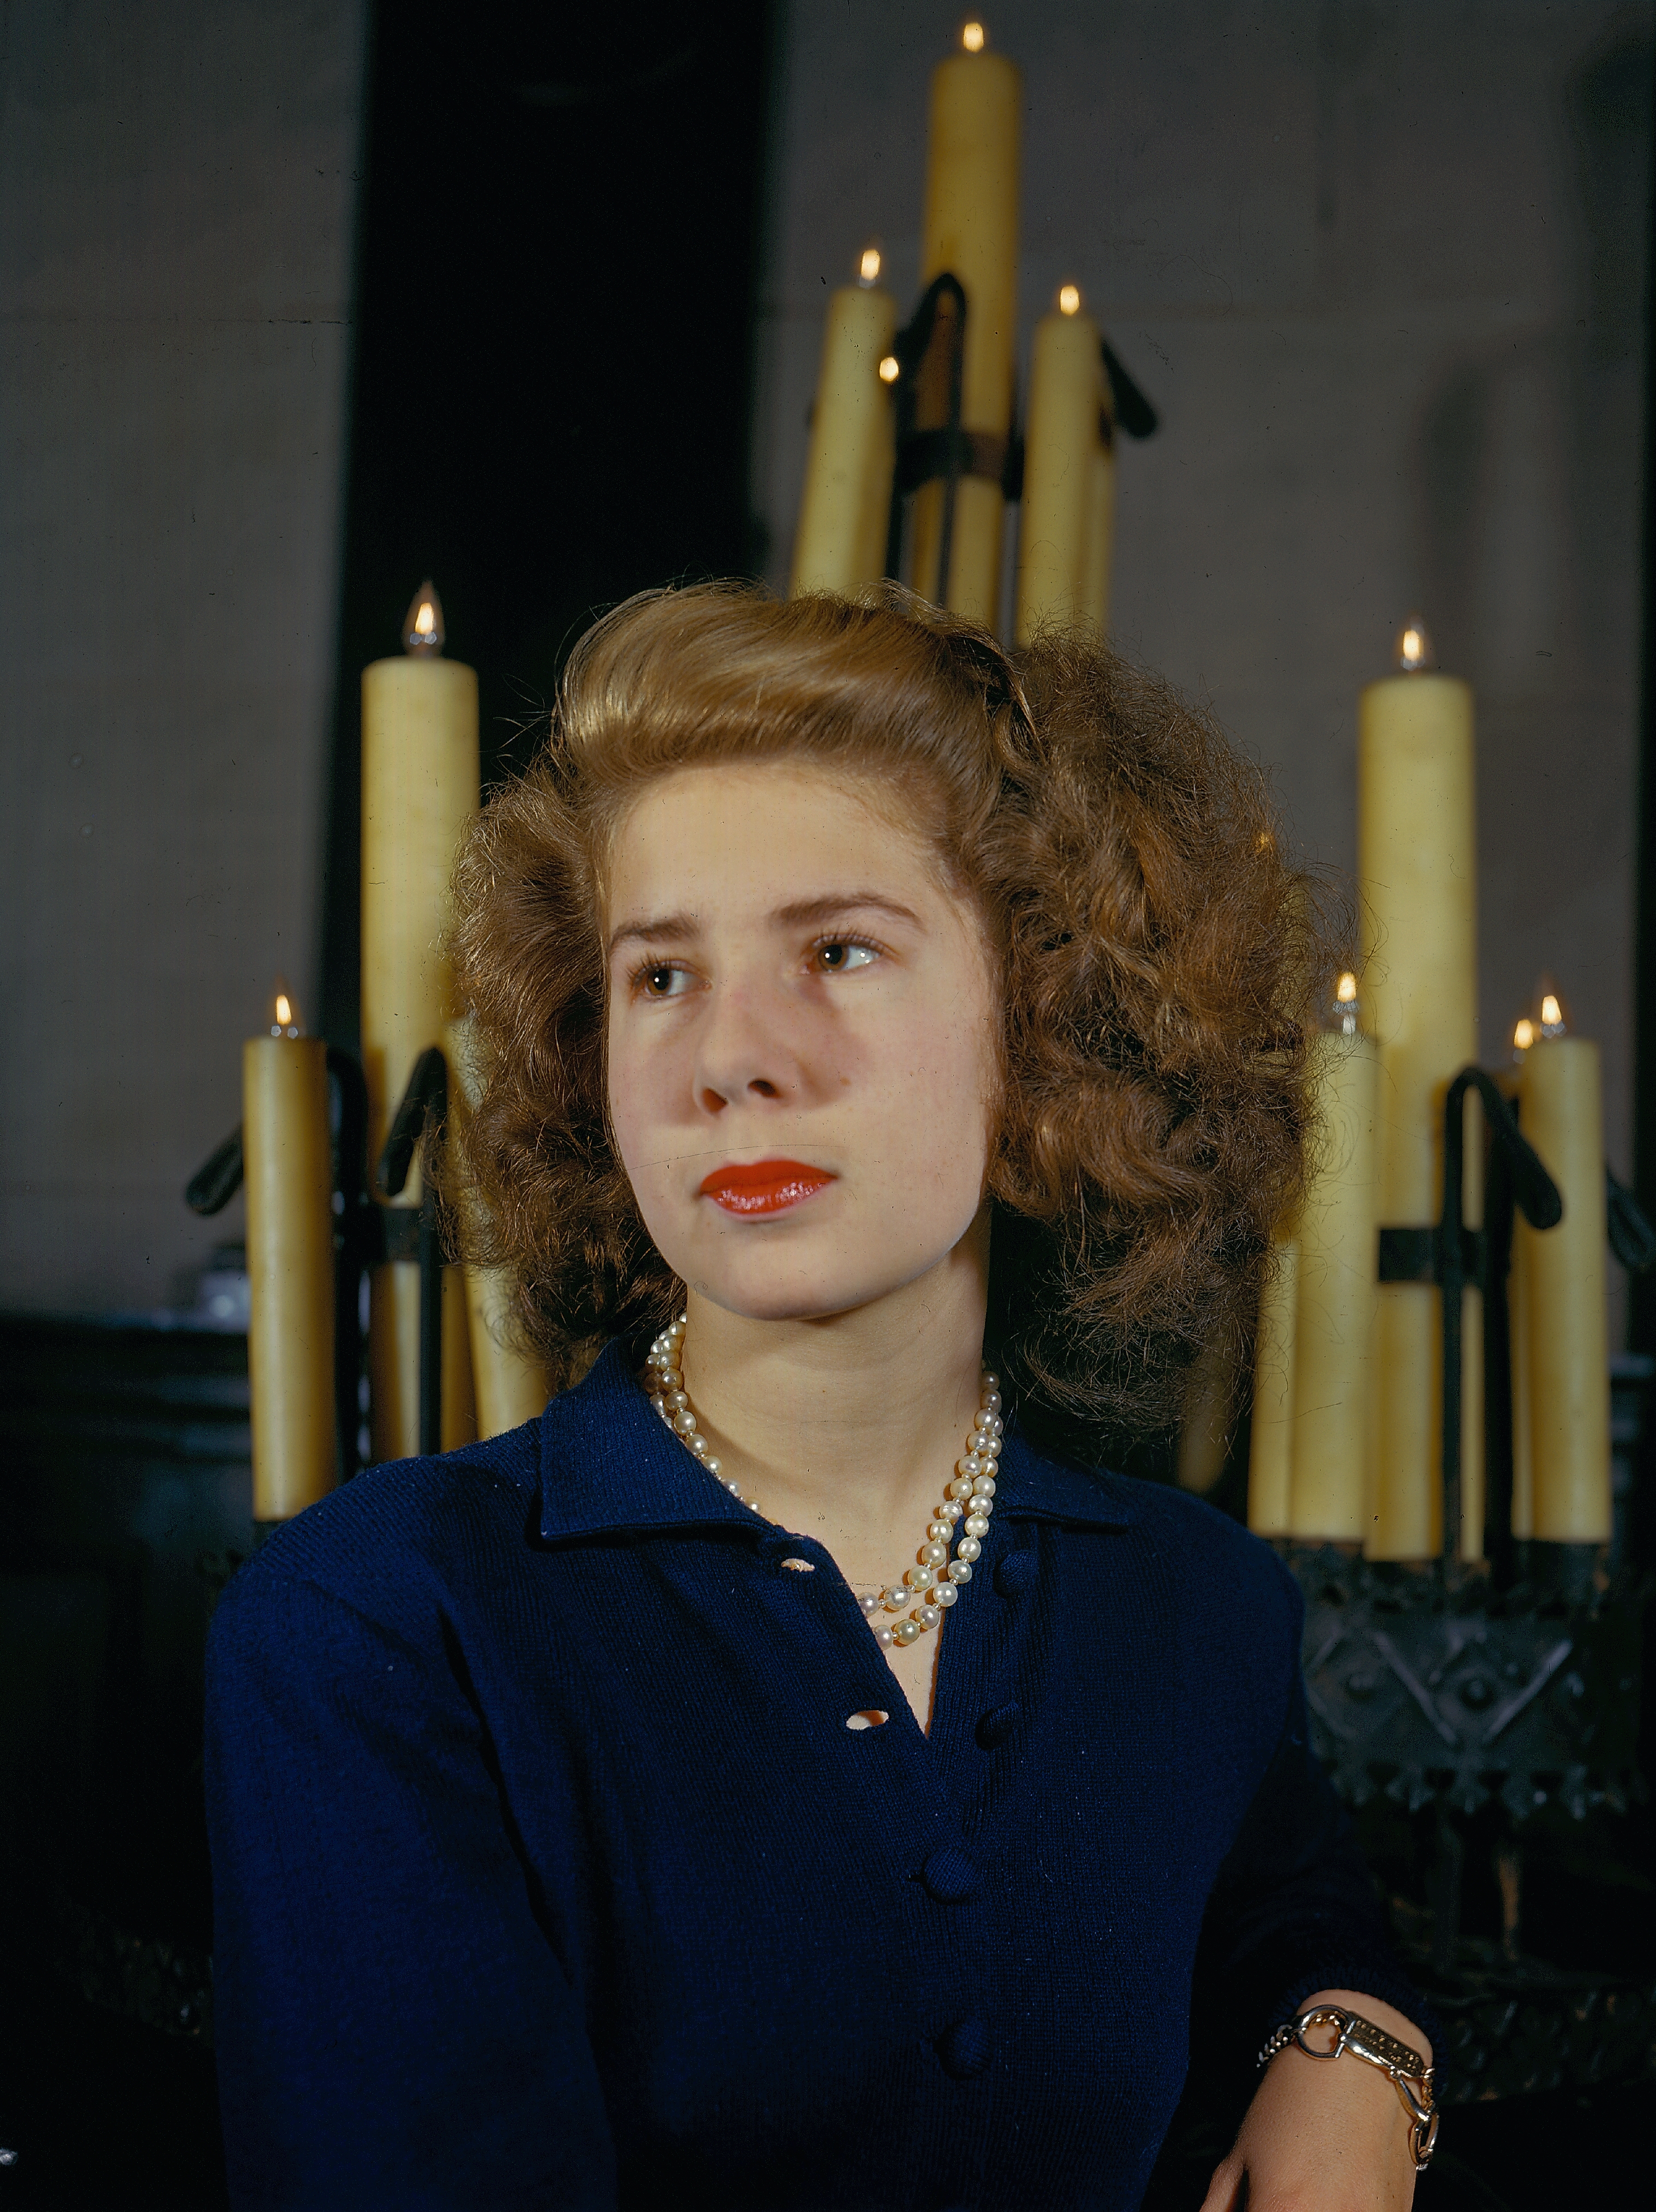 La duchesse d'Alba, Maria del Rosario Cayetana Fitz-James Stuart photographiée le 1er janvier 1945 | Source : Getty Images